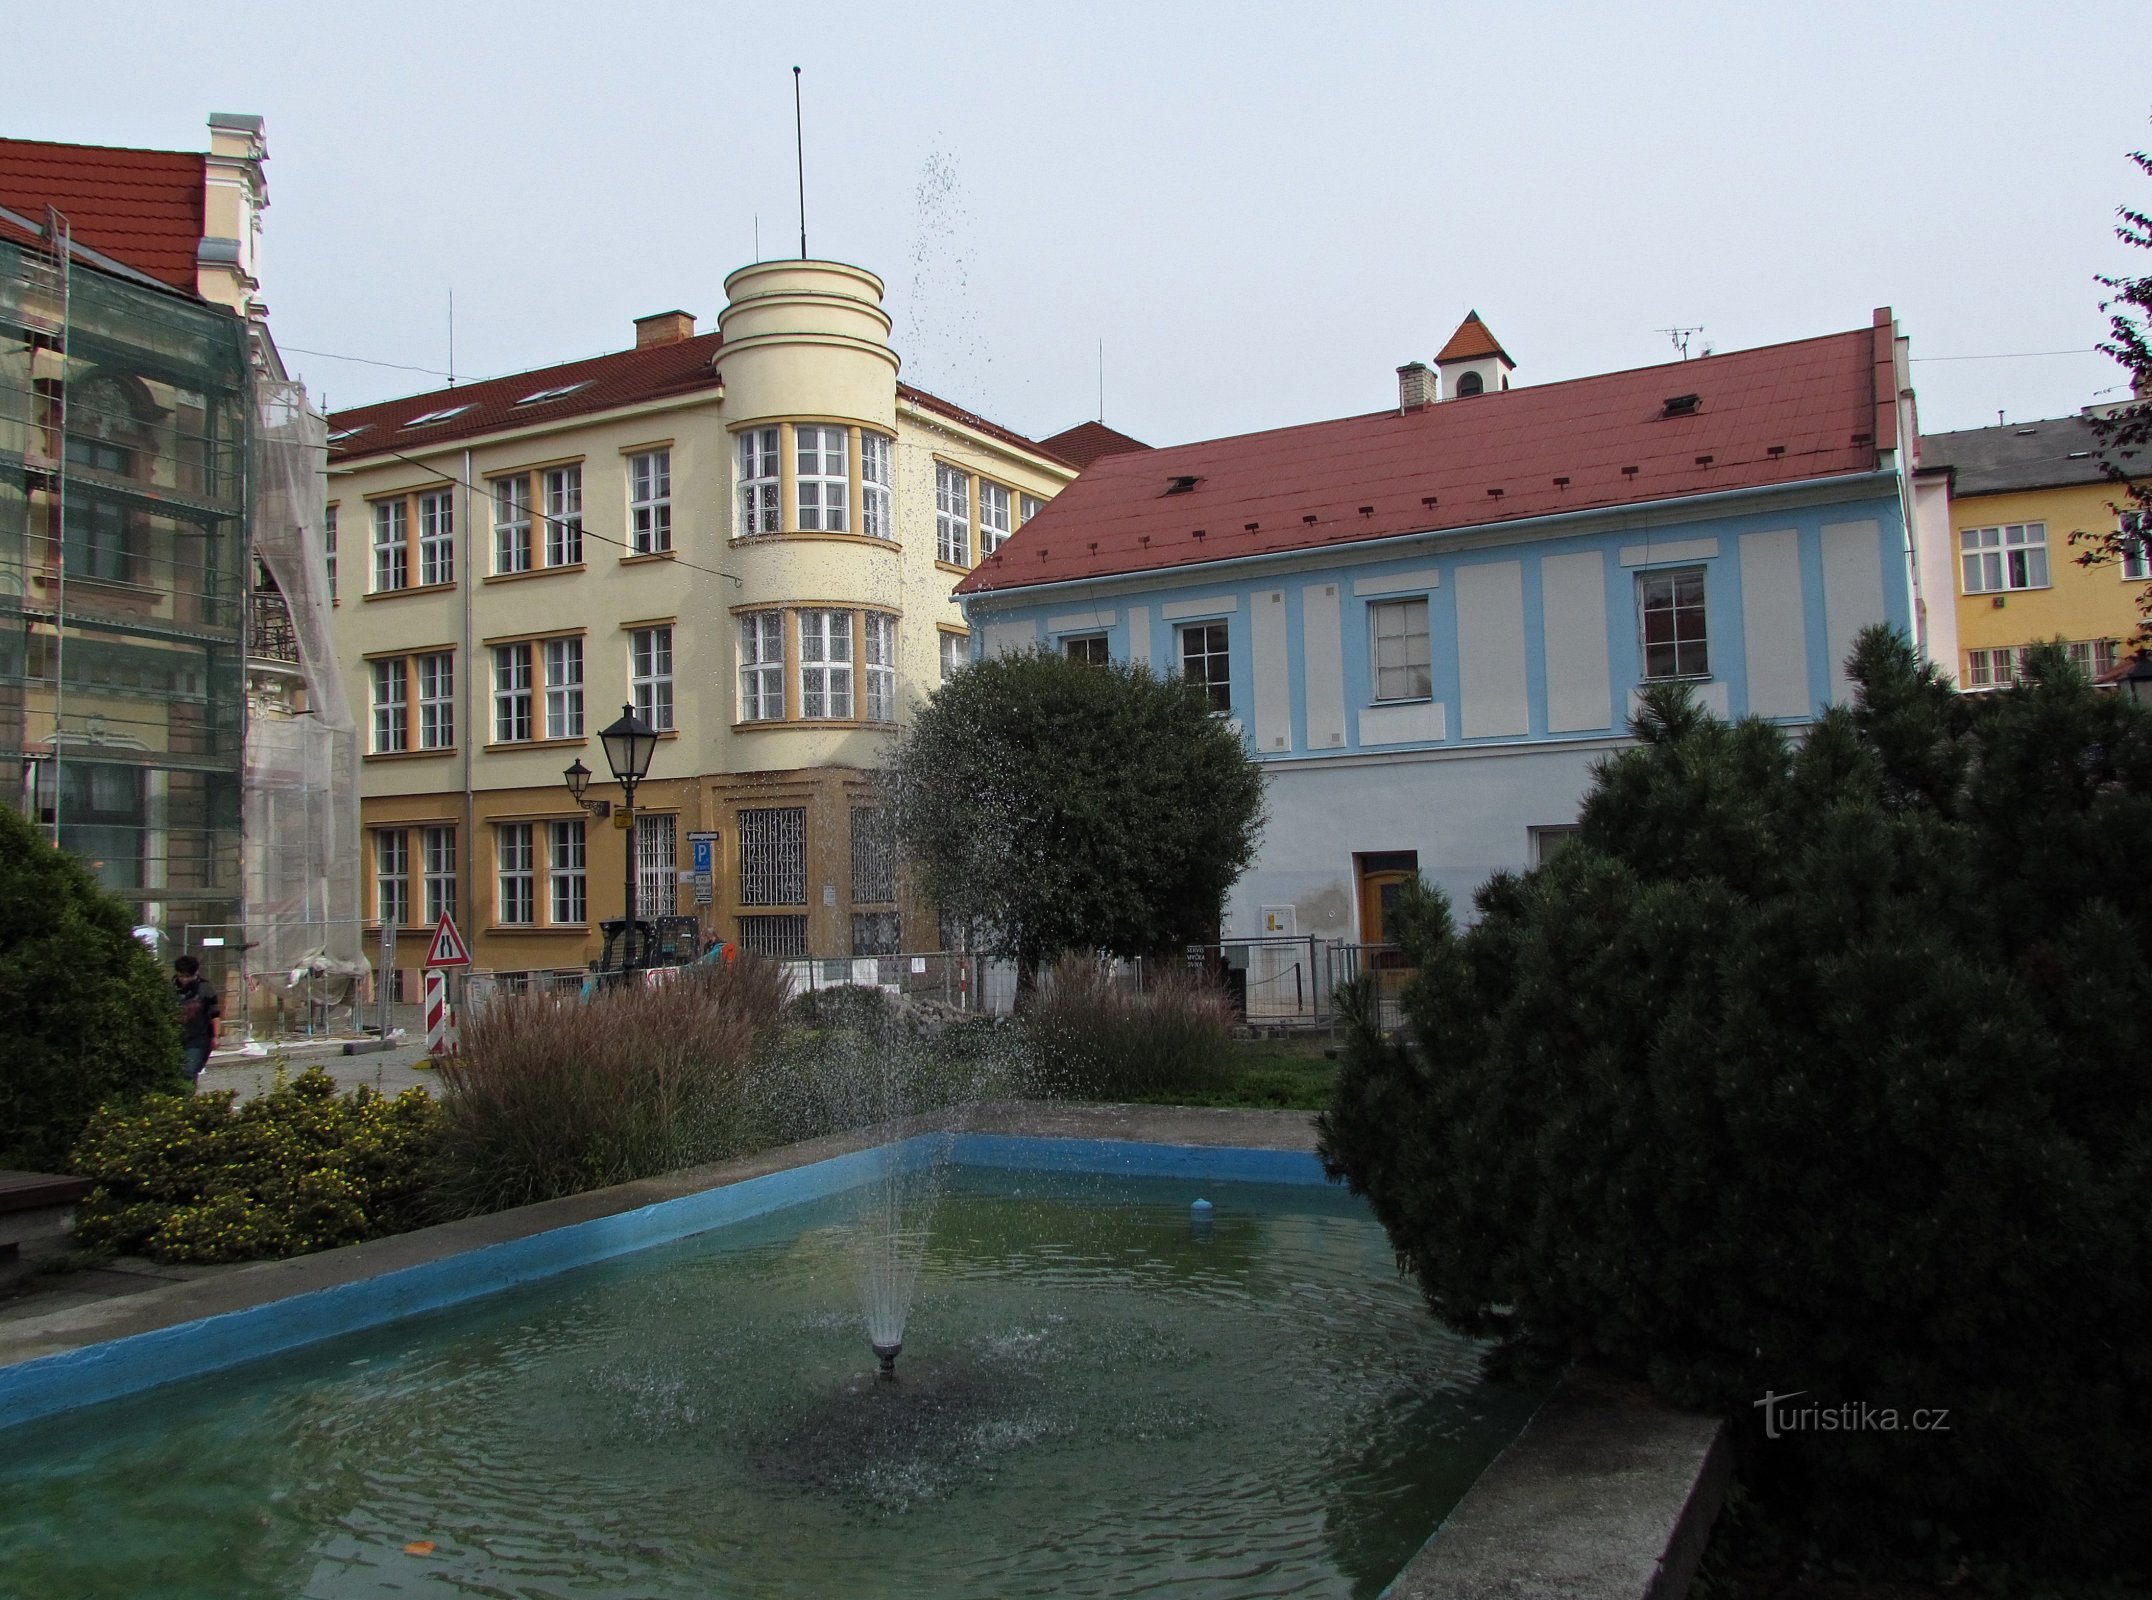 Επίσκεψη στο κάστρο στο Nové Jičín και ταξίδι στο Skalky